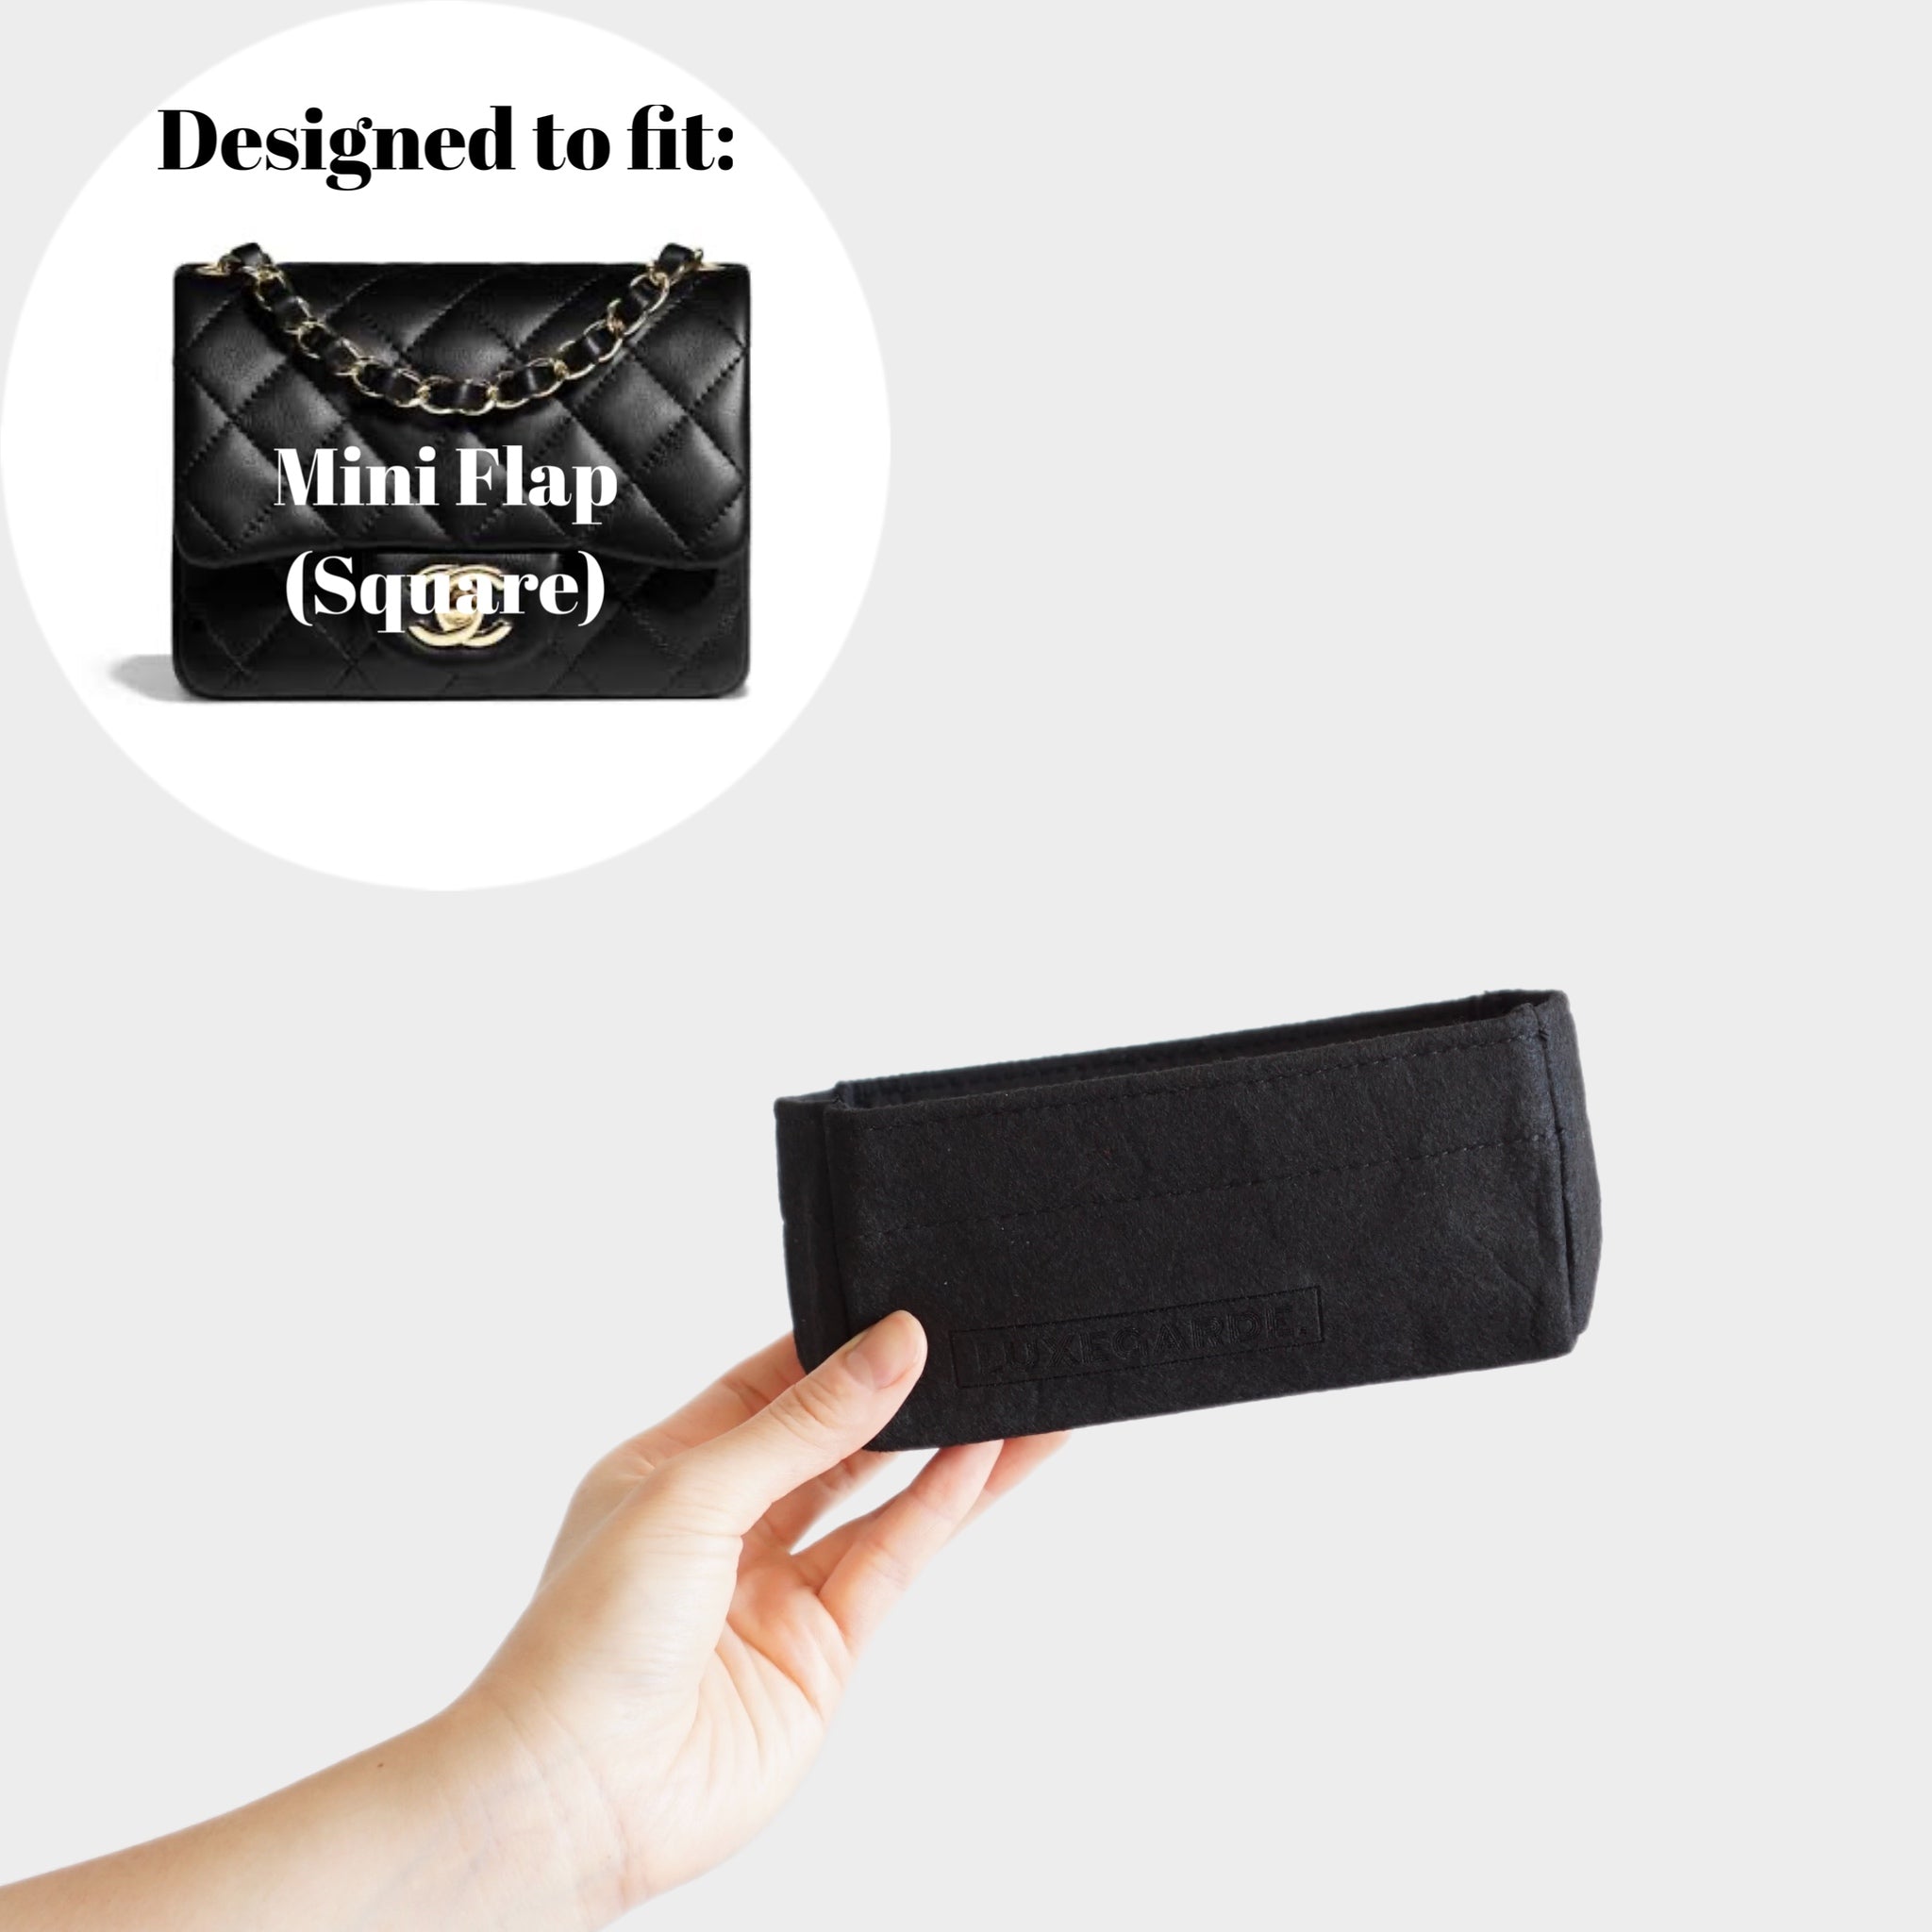 Louis Vuitton Pochette Felicie Card Holder Insert - For Sale on 1stDibs